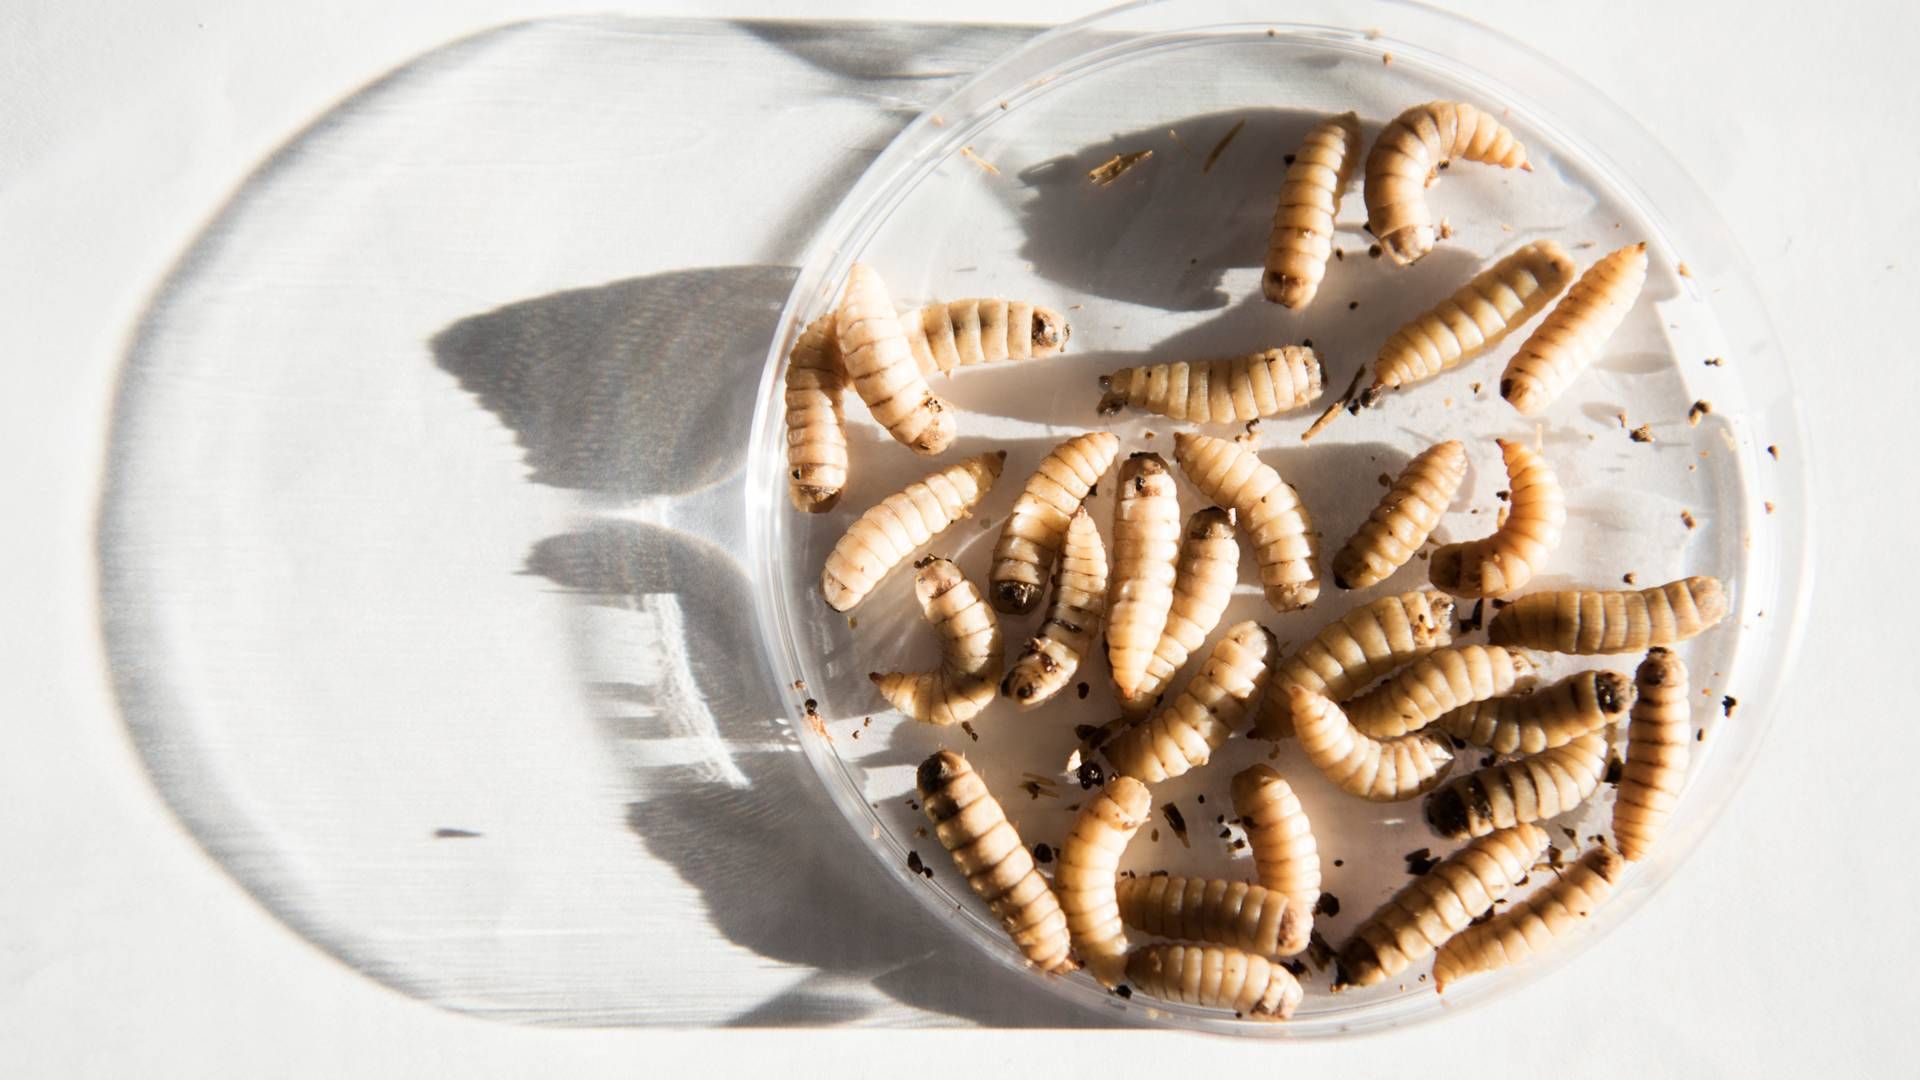 Insectum opdrætter insekter og forarbejder dem til protein, som selskabet afsætter til sine kunder. | Foto: Laura Bisgaard Krogh